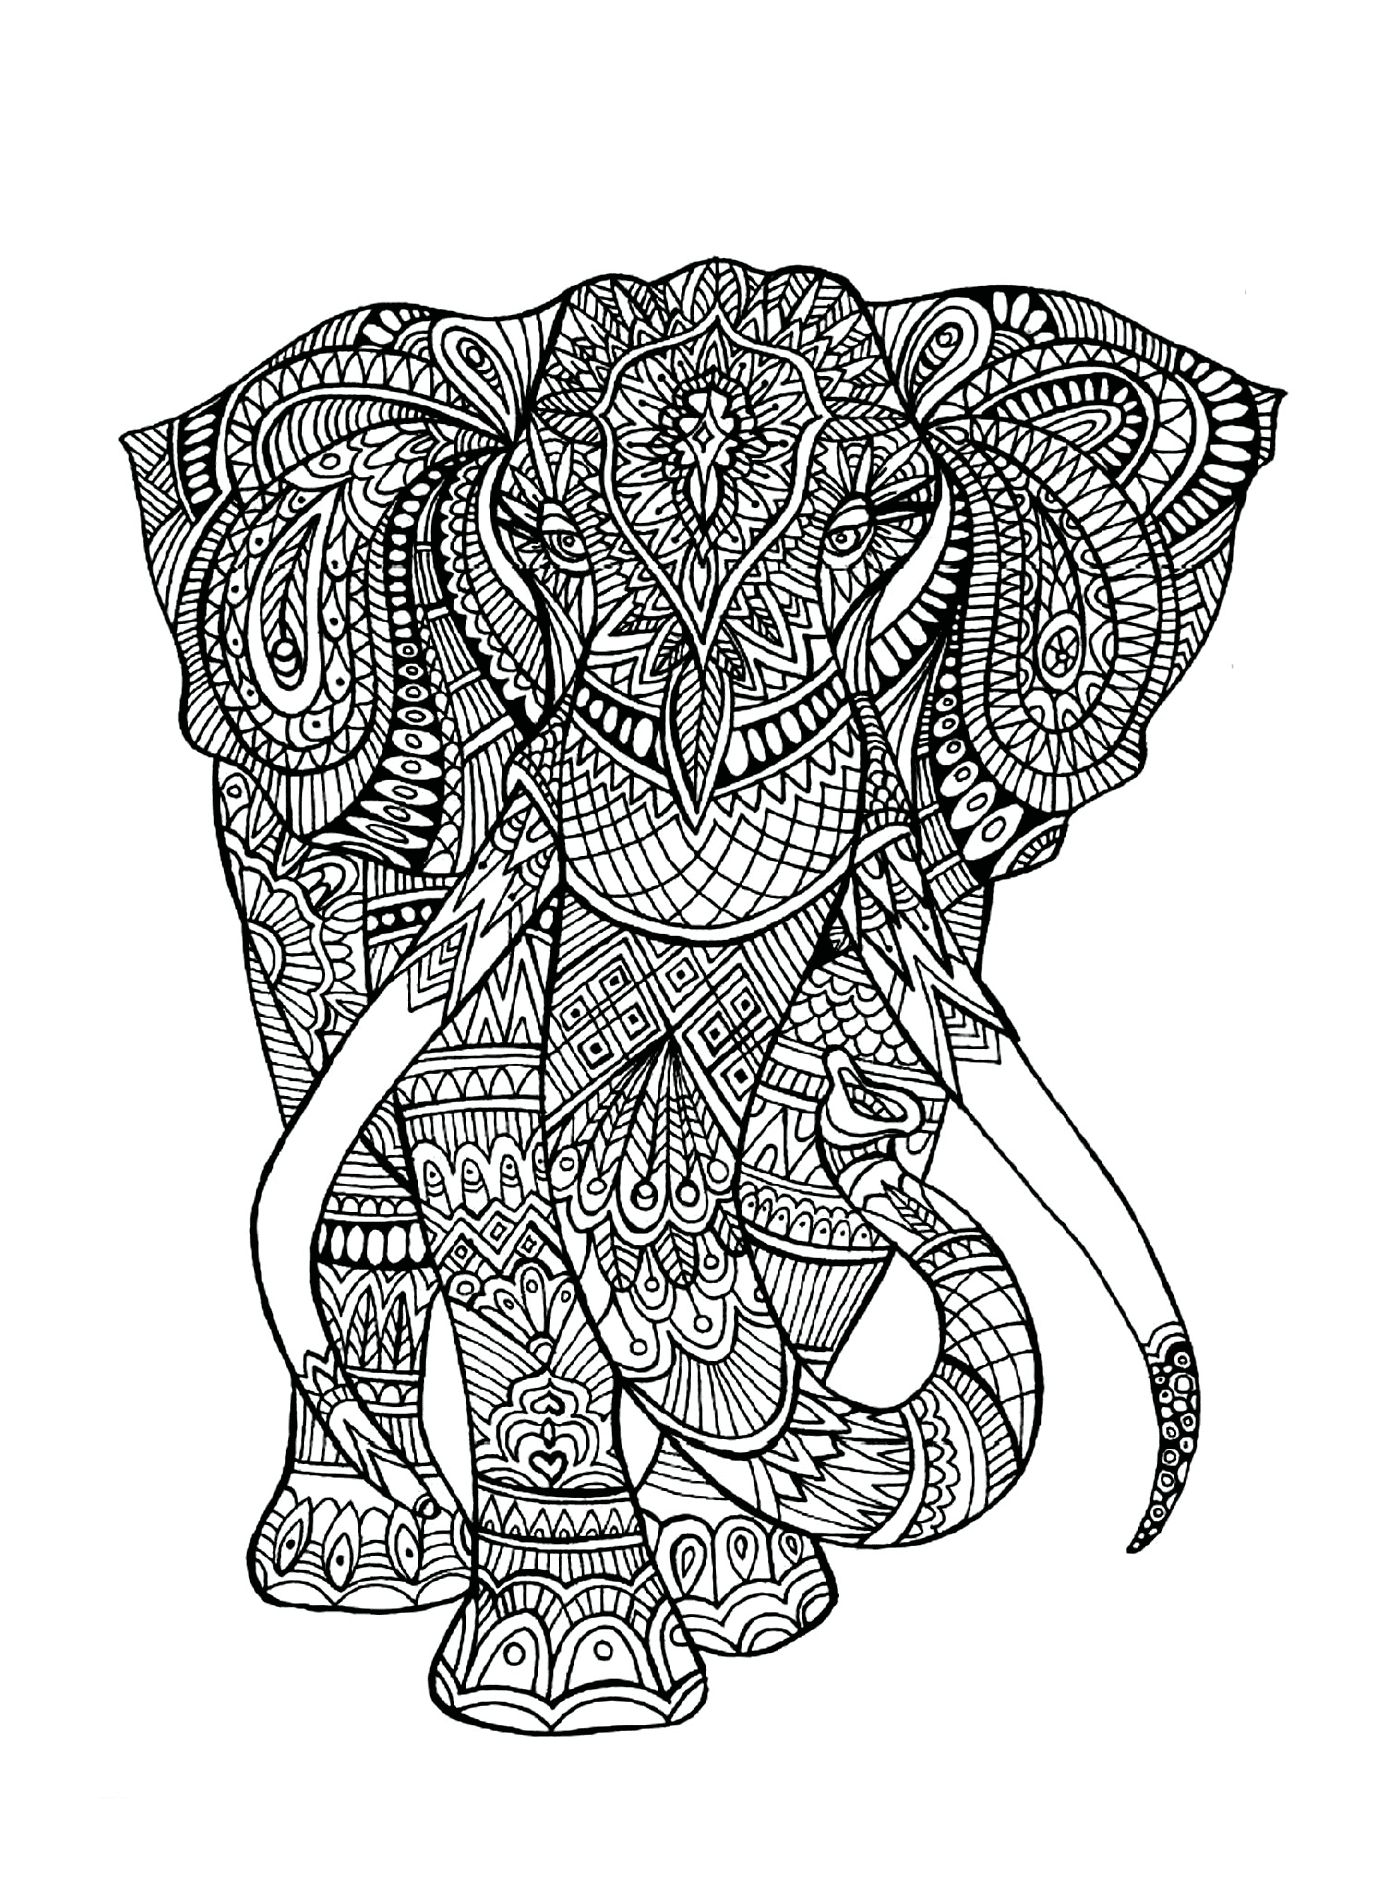  Um elefante com padrões complexos em seu corpo 